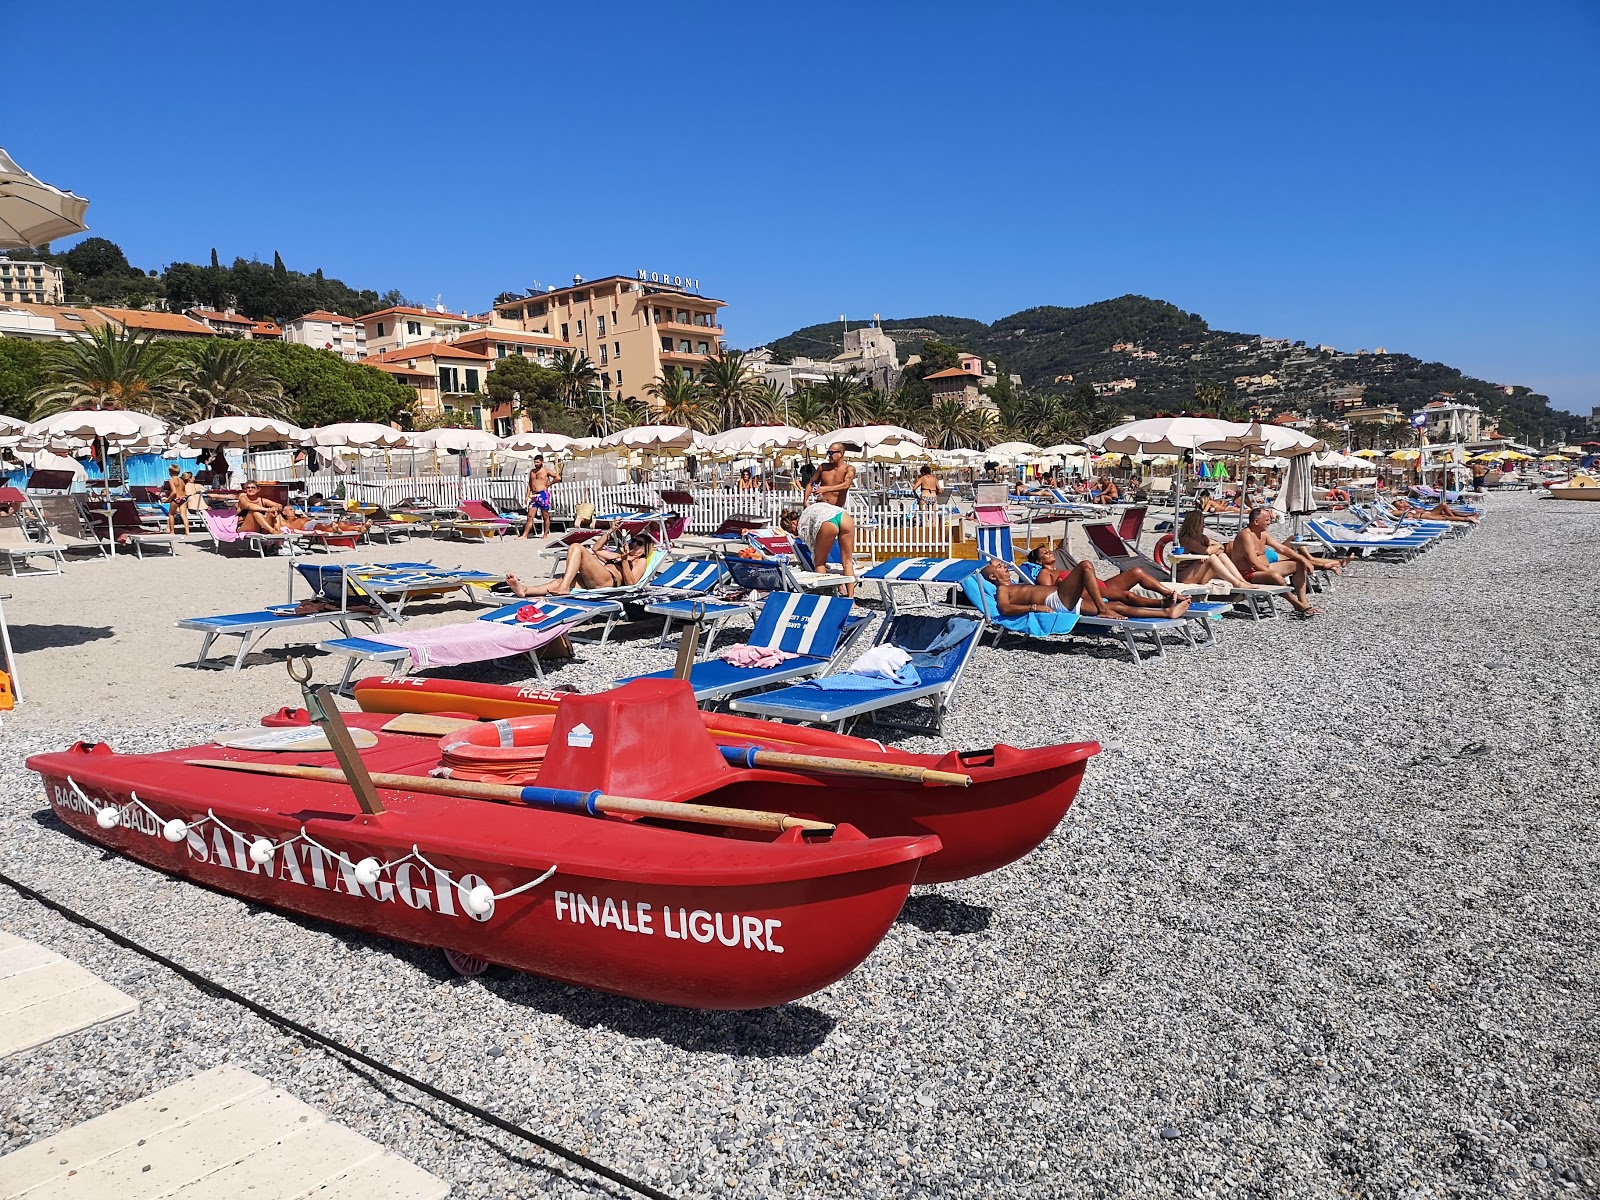 Fotografie cu Spiaggia libera Attrezzata cu nivelul de curățenie înalt